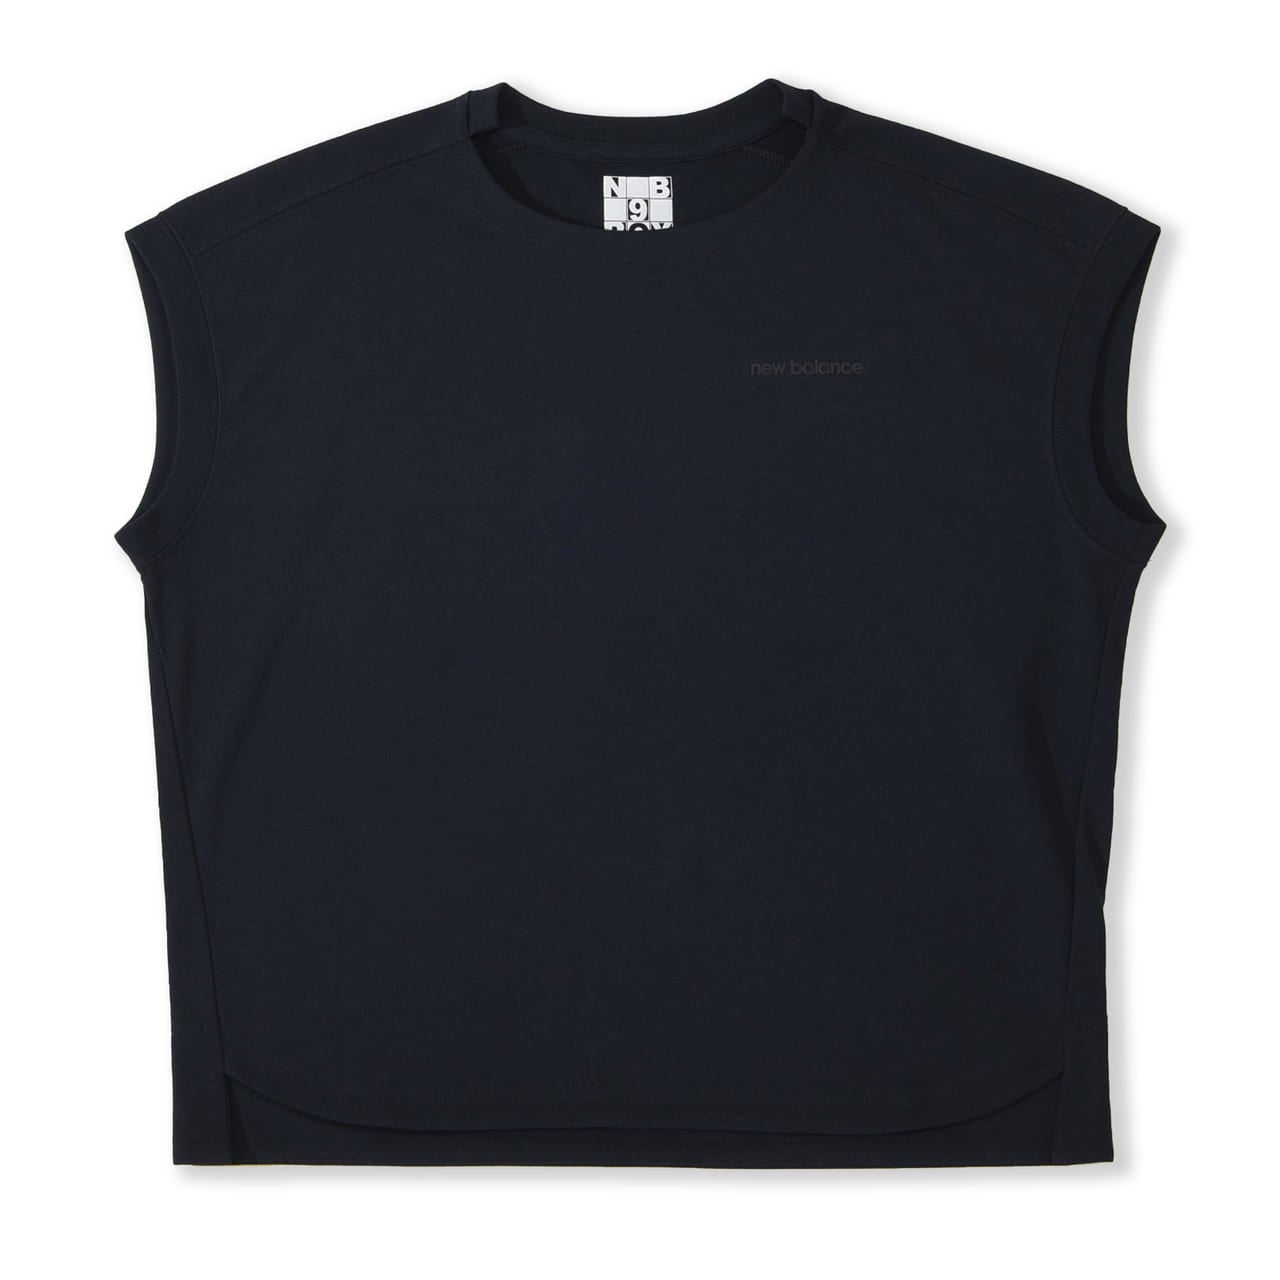 「New Balance（ニューバランス）」が展開するTシャツコレクション「9BOX（ナインボックス）」に新作が登場。9つのシルエットからお気に入りの一着を選ぶことができる。